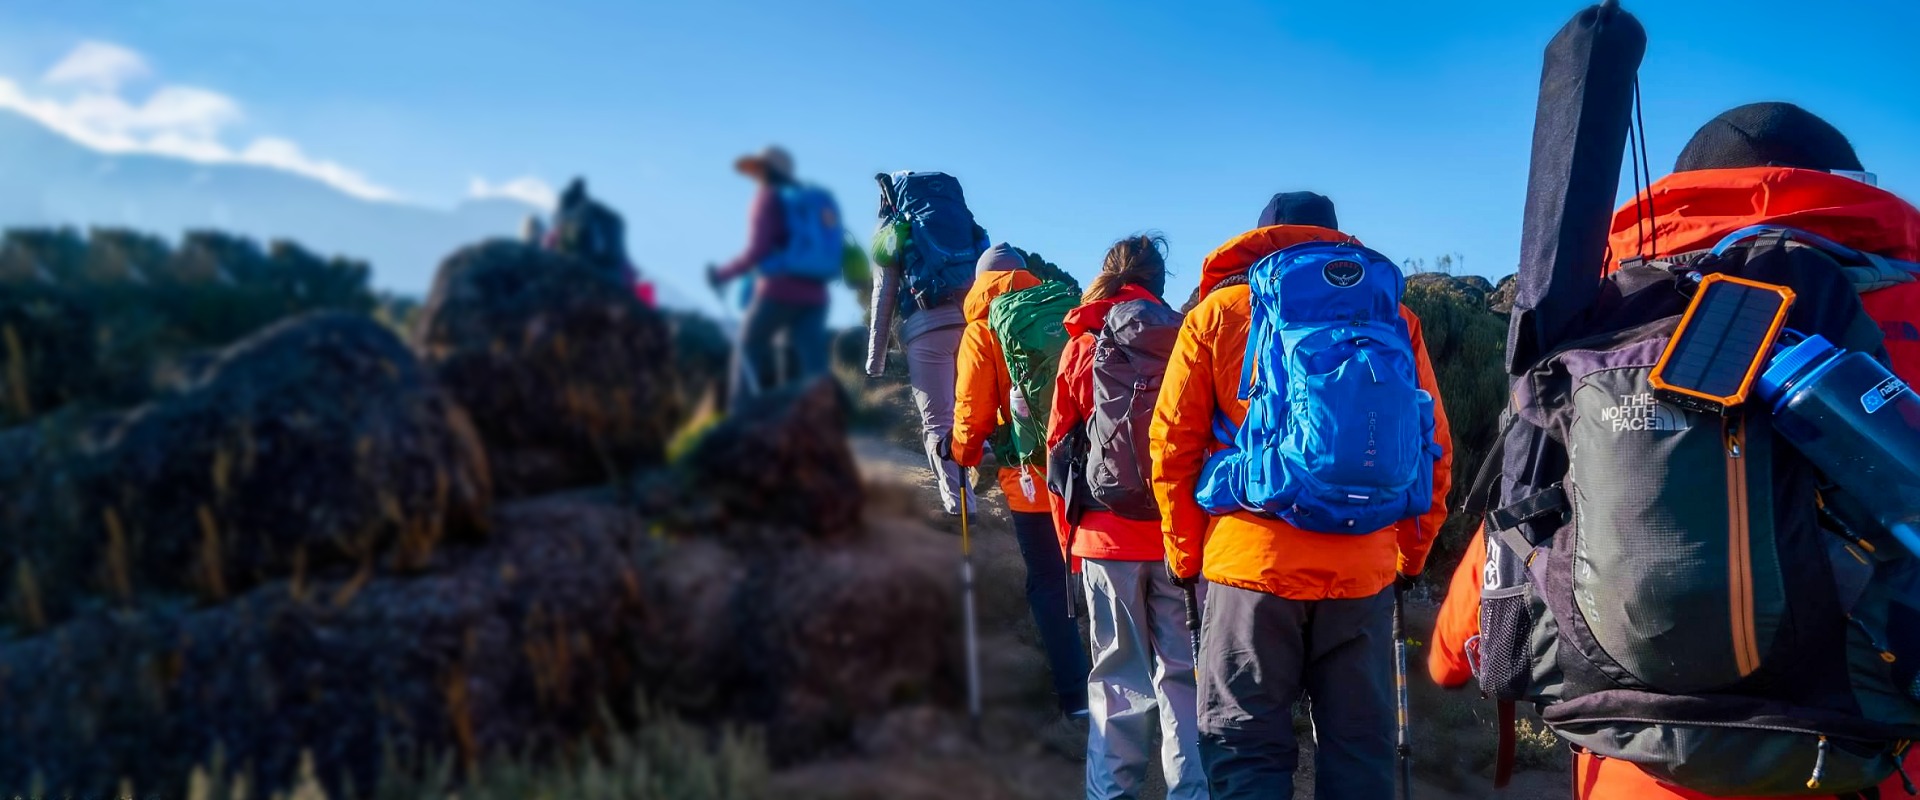 Kilimanjaro Booking Information